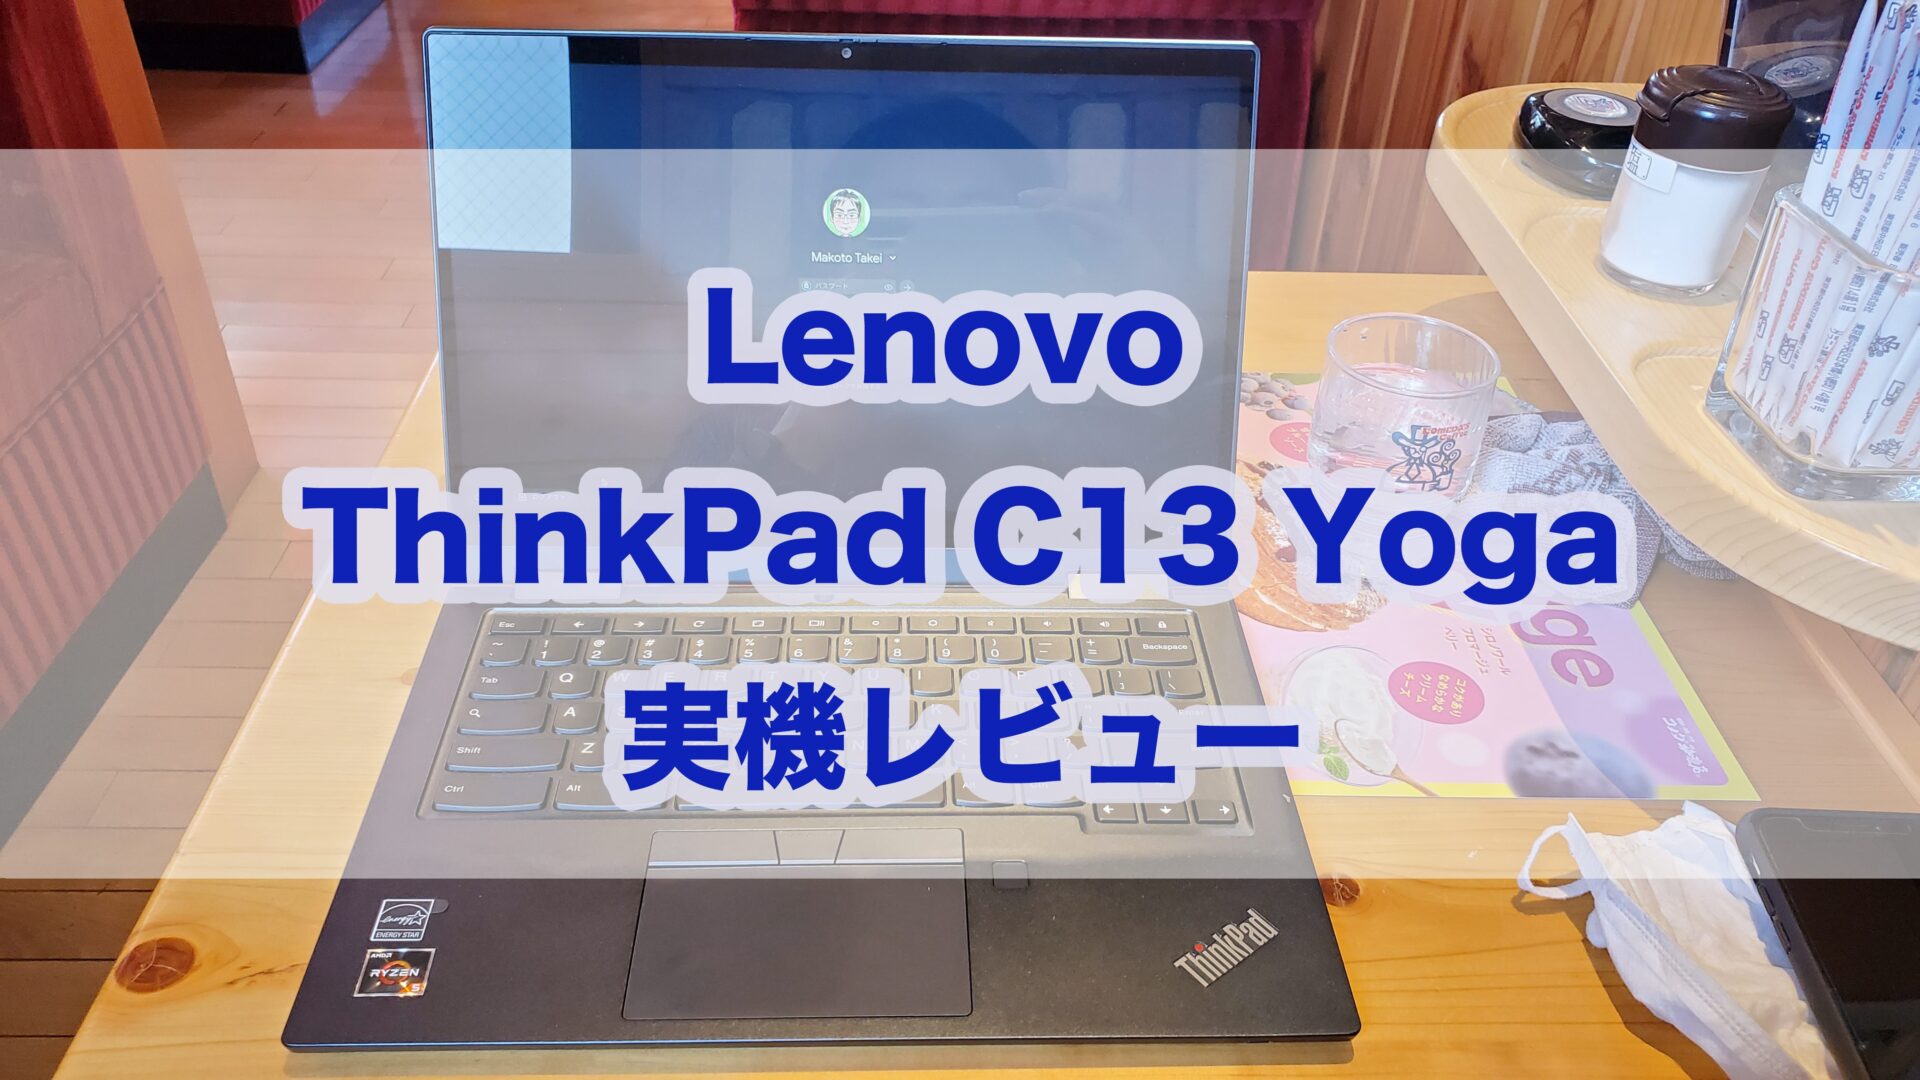 Lenovo Thinkpad C13 Yoga Chromebook レビュー トラックポイント 赤ポチ 初搭載 指紋認証 Usiペンにも対応したハイエンドモデル タケマコブログ